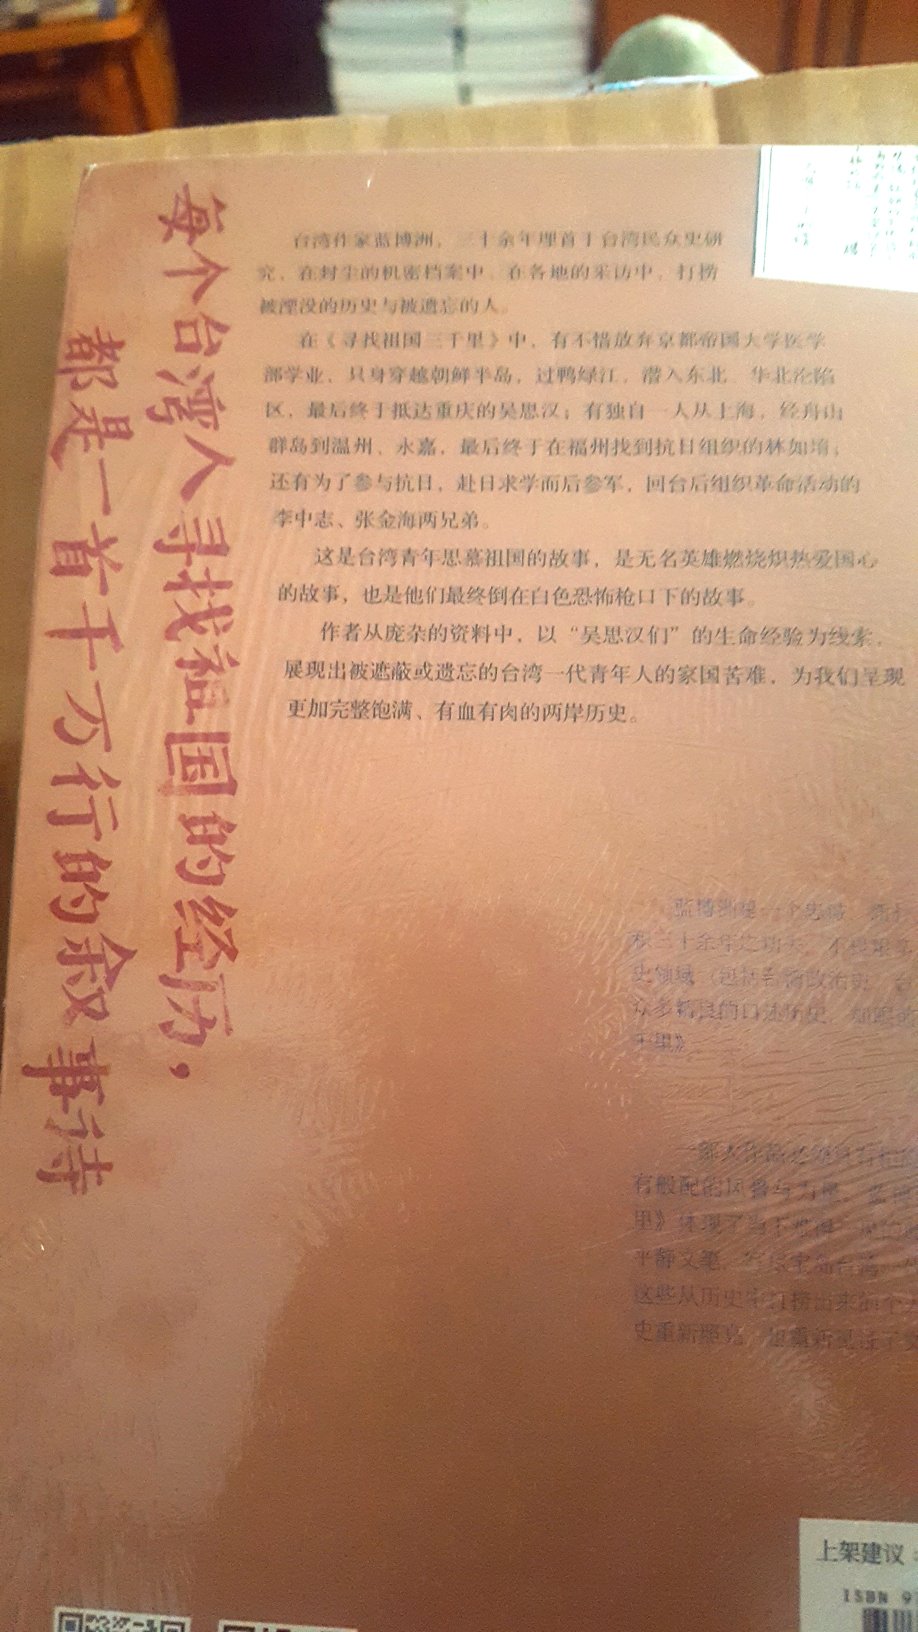 这是一本非常值得一读的好书，是台湾作家所著的纪实文学，写的是台湾的热血青年寻找祖国的经历，告诉你不为人知的历史。